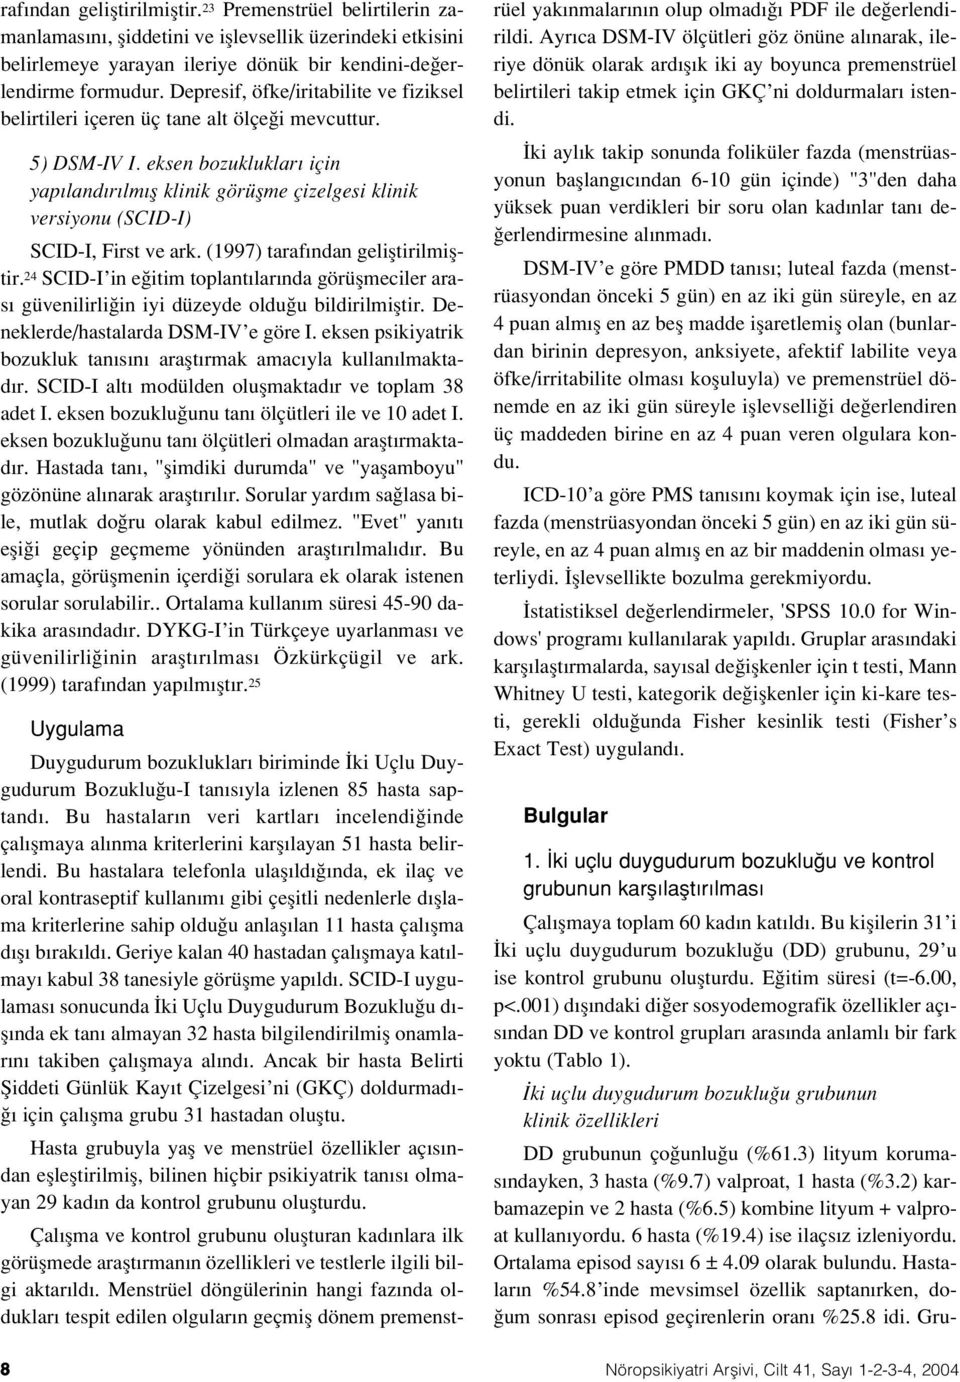 eksen bozukluklar için yap land r lm fl klinik görüflme çizelgesi klinik versiyonu (SCID-I) SCID-I, First ve ark. (1997) taraf ndan gelifltirilmifltir.